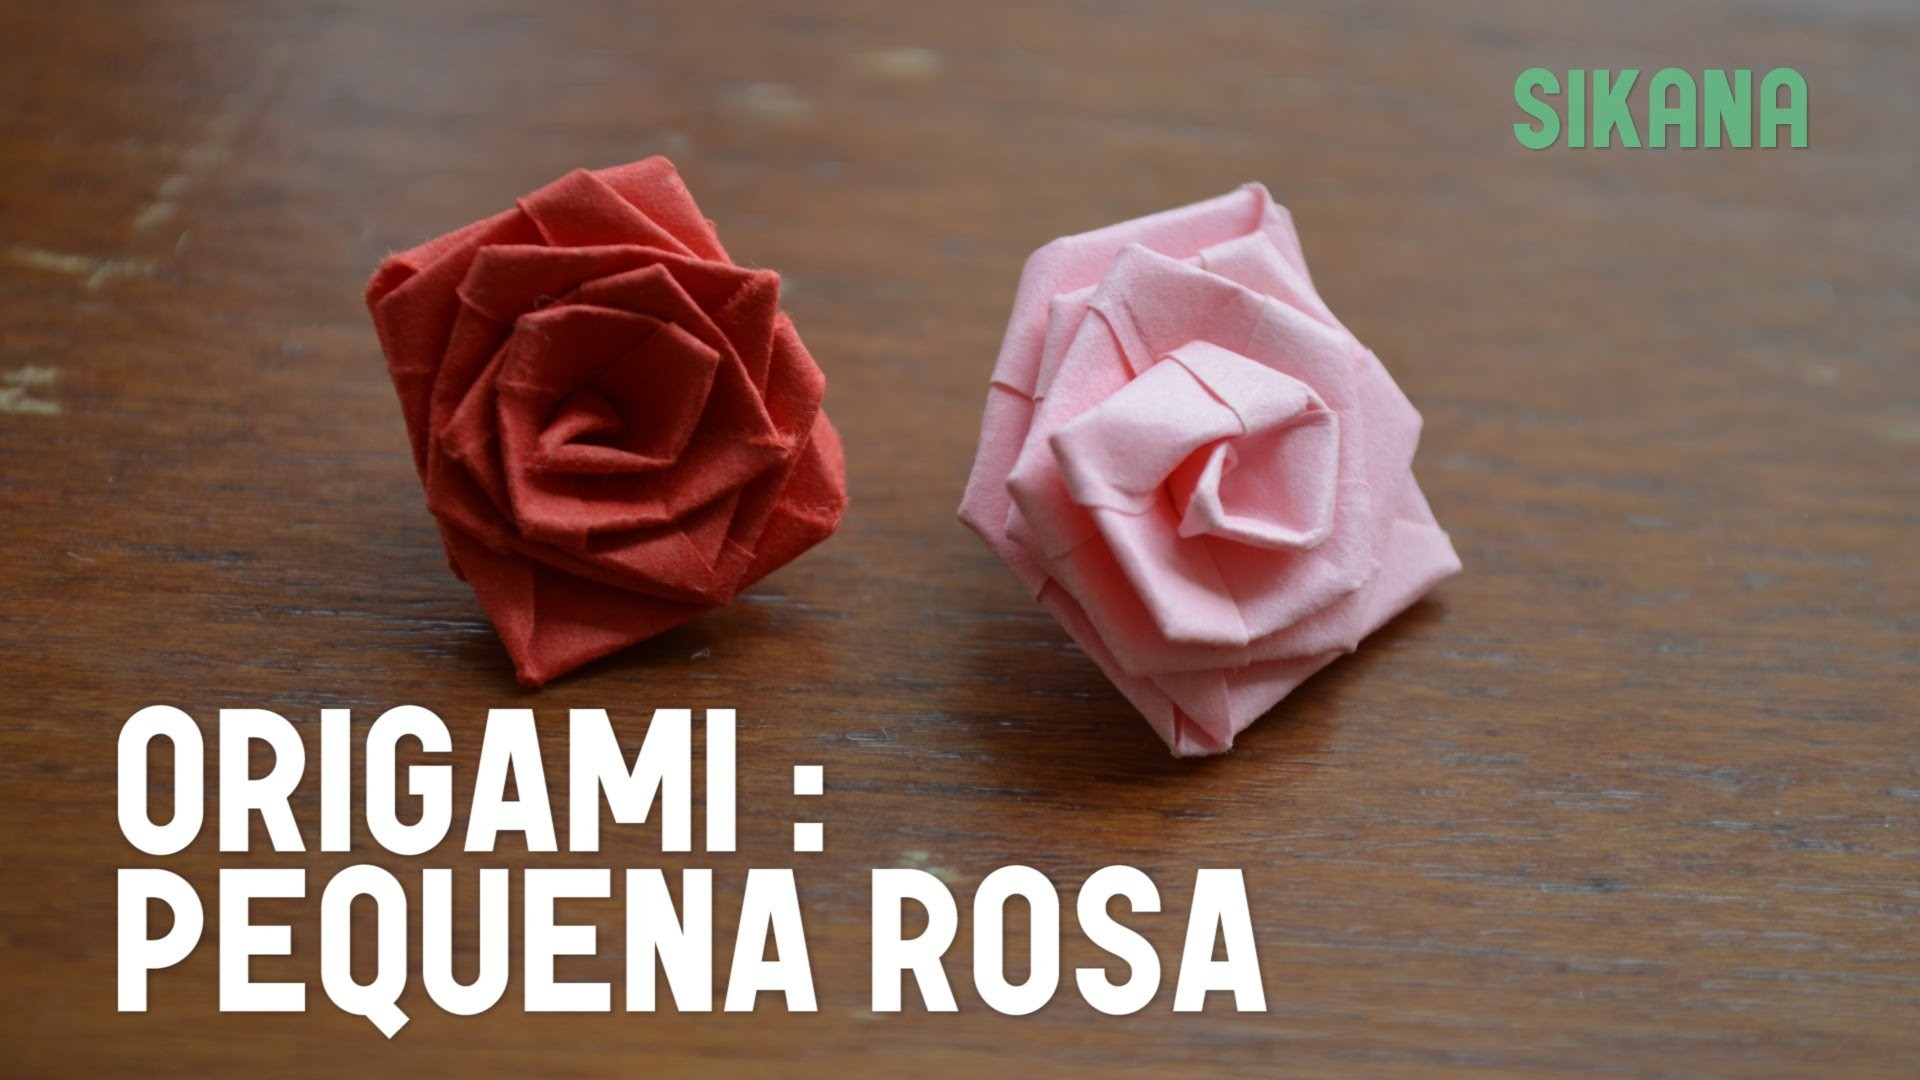 Como fazer uma pequena rosa de origami?